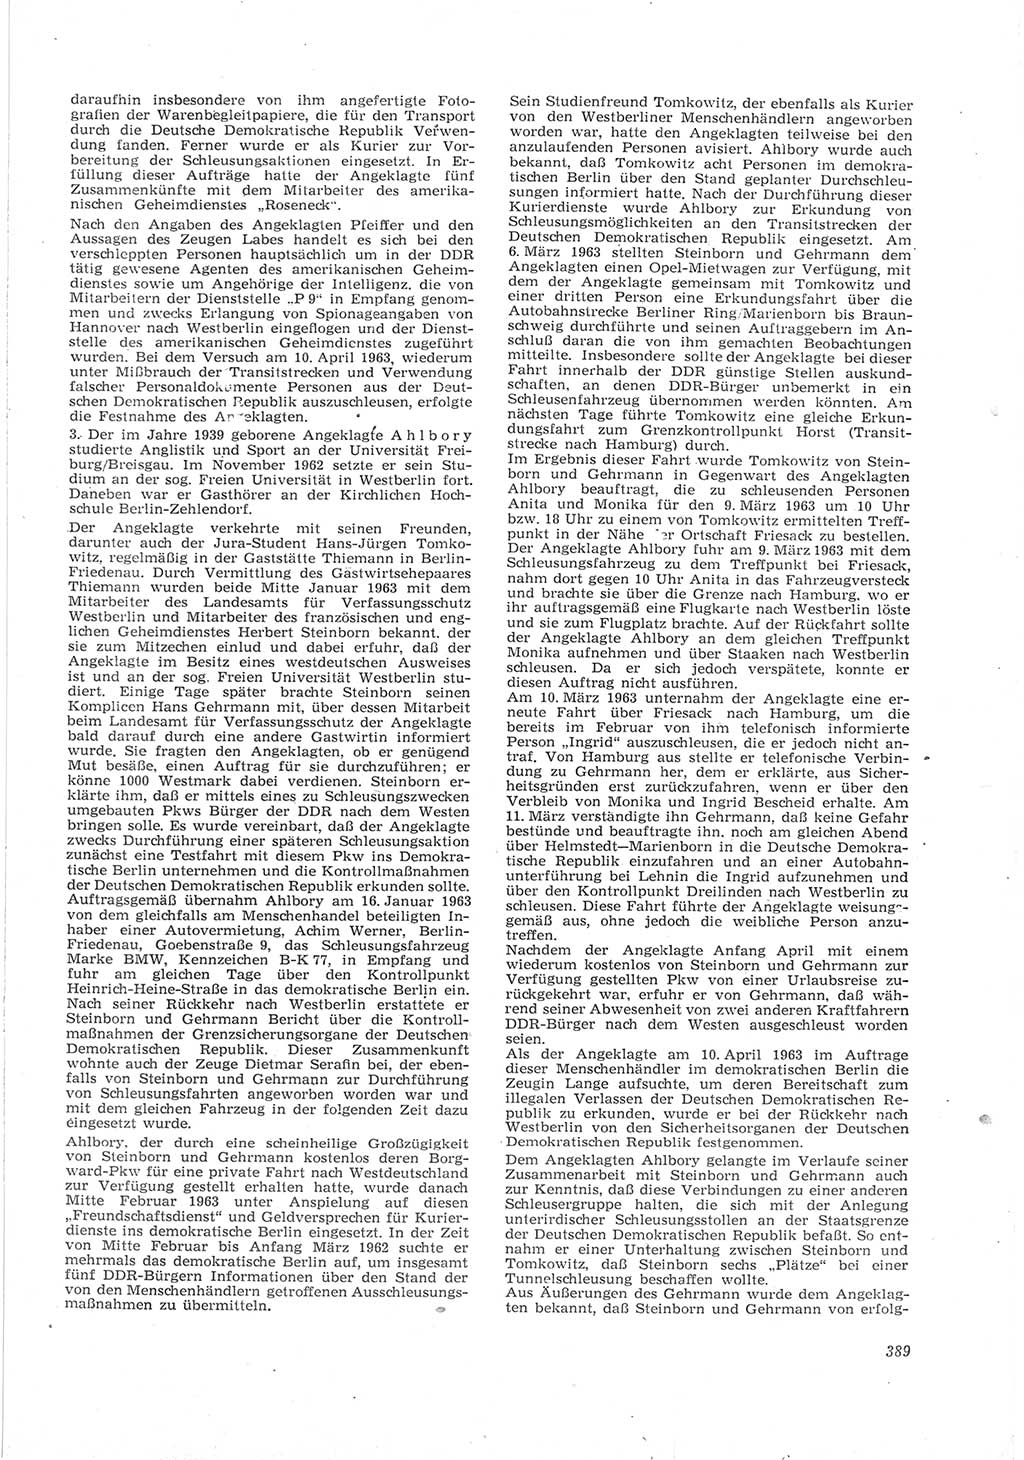 Neue Justiz (NJ), Zeitschrift für Recht und Rechtswissenschaft [Deutsche Demokratische Republik (DDR)], 17. Jahrgang 1963, Seite 389 (NJ DDR 1963, S. 389)